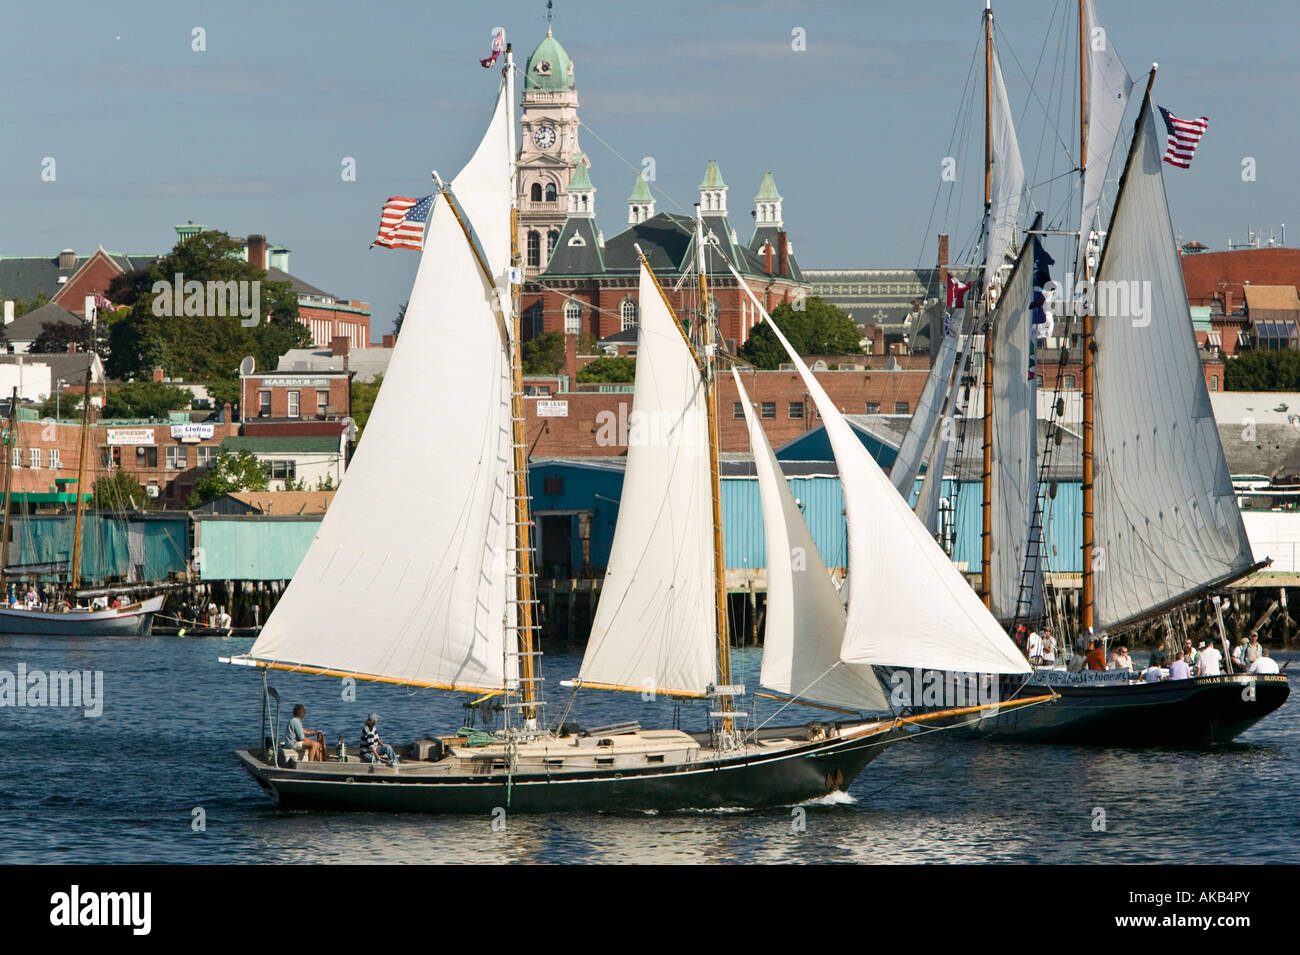 USA, Massachusetts, Cape Ann, Gloucester, America's Oldest Seaport, Gloucester Schooner Festival Stock Photo